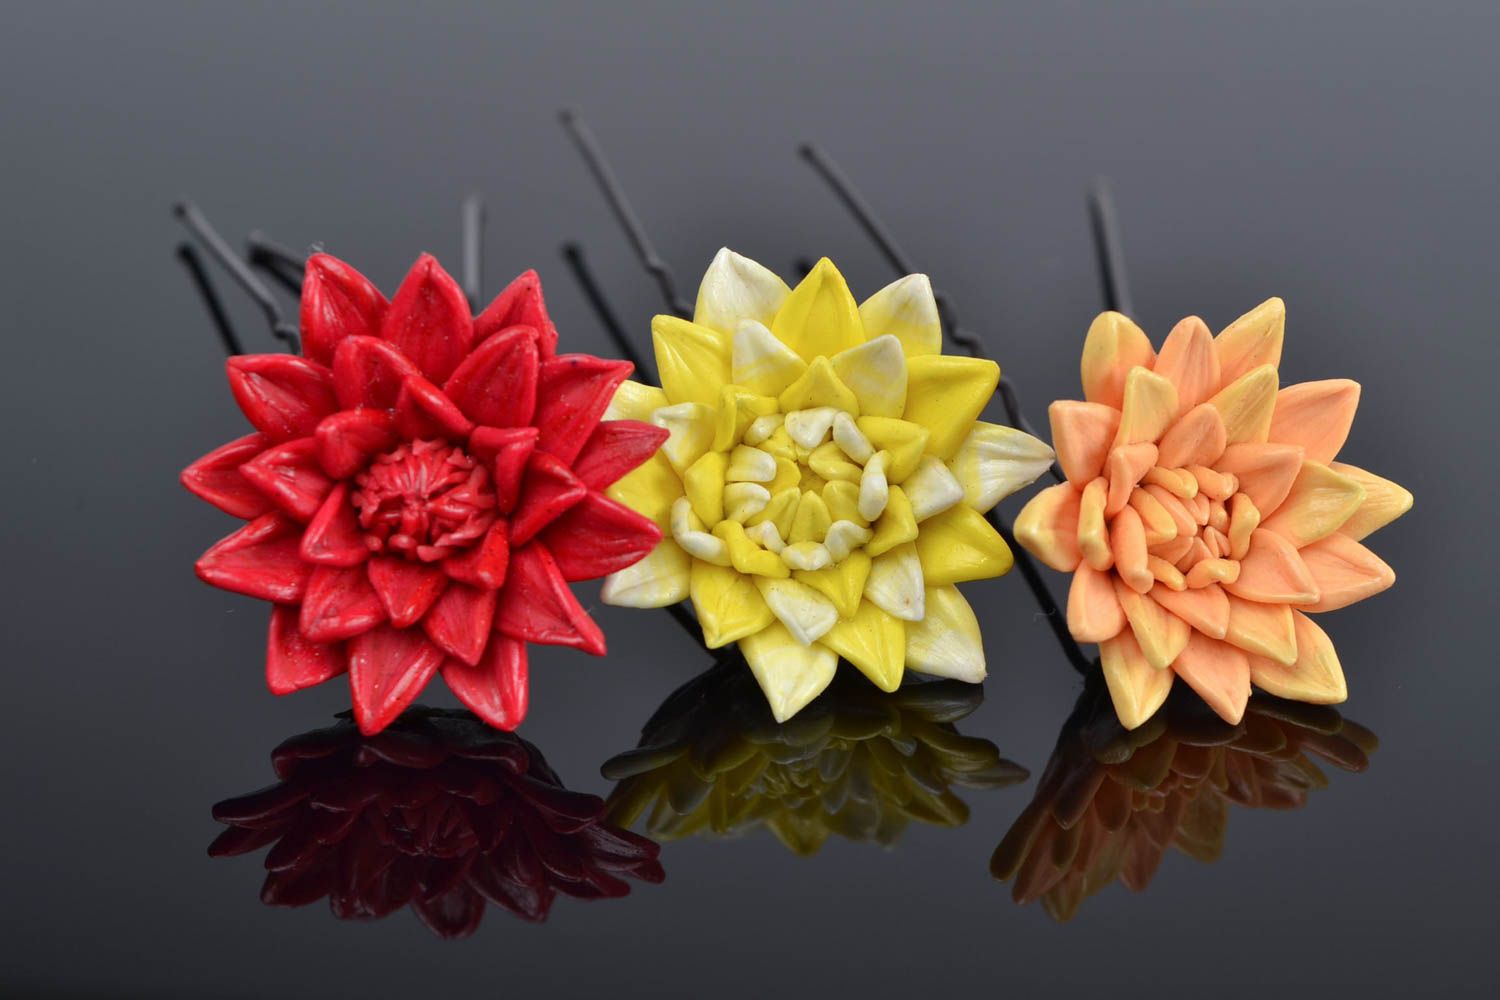 Шпильки для волос из полимерной глины набор из 3 аксессуаров цветные хэнд мейд фото 1